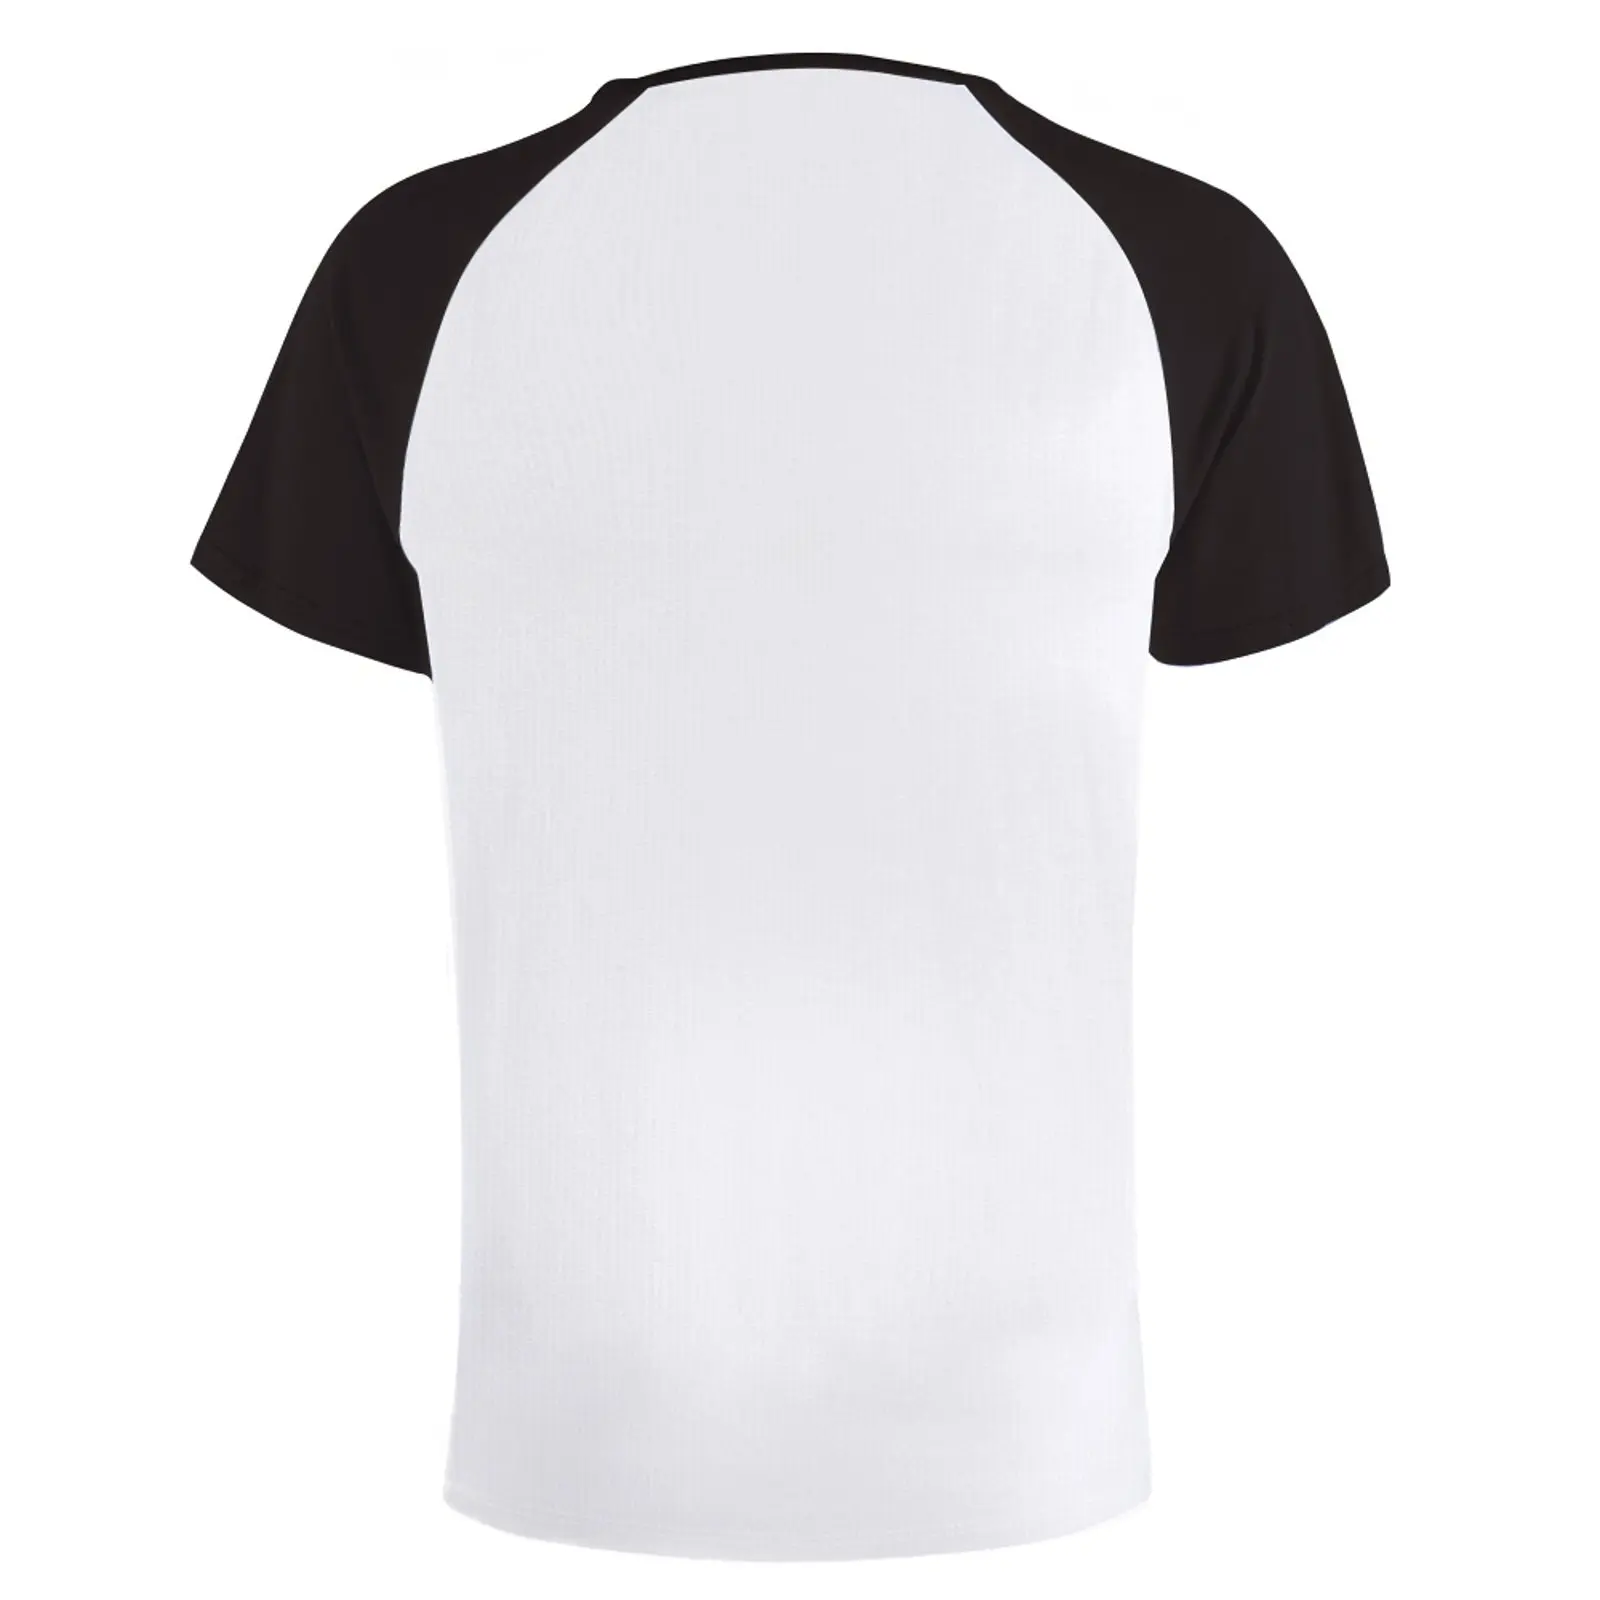 A ti, Oh, Vê a T-Shirt simples t-shirt de manga Curta, camisetas divertidas de peso pesado, t-shirts para os homens